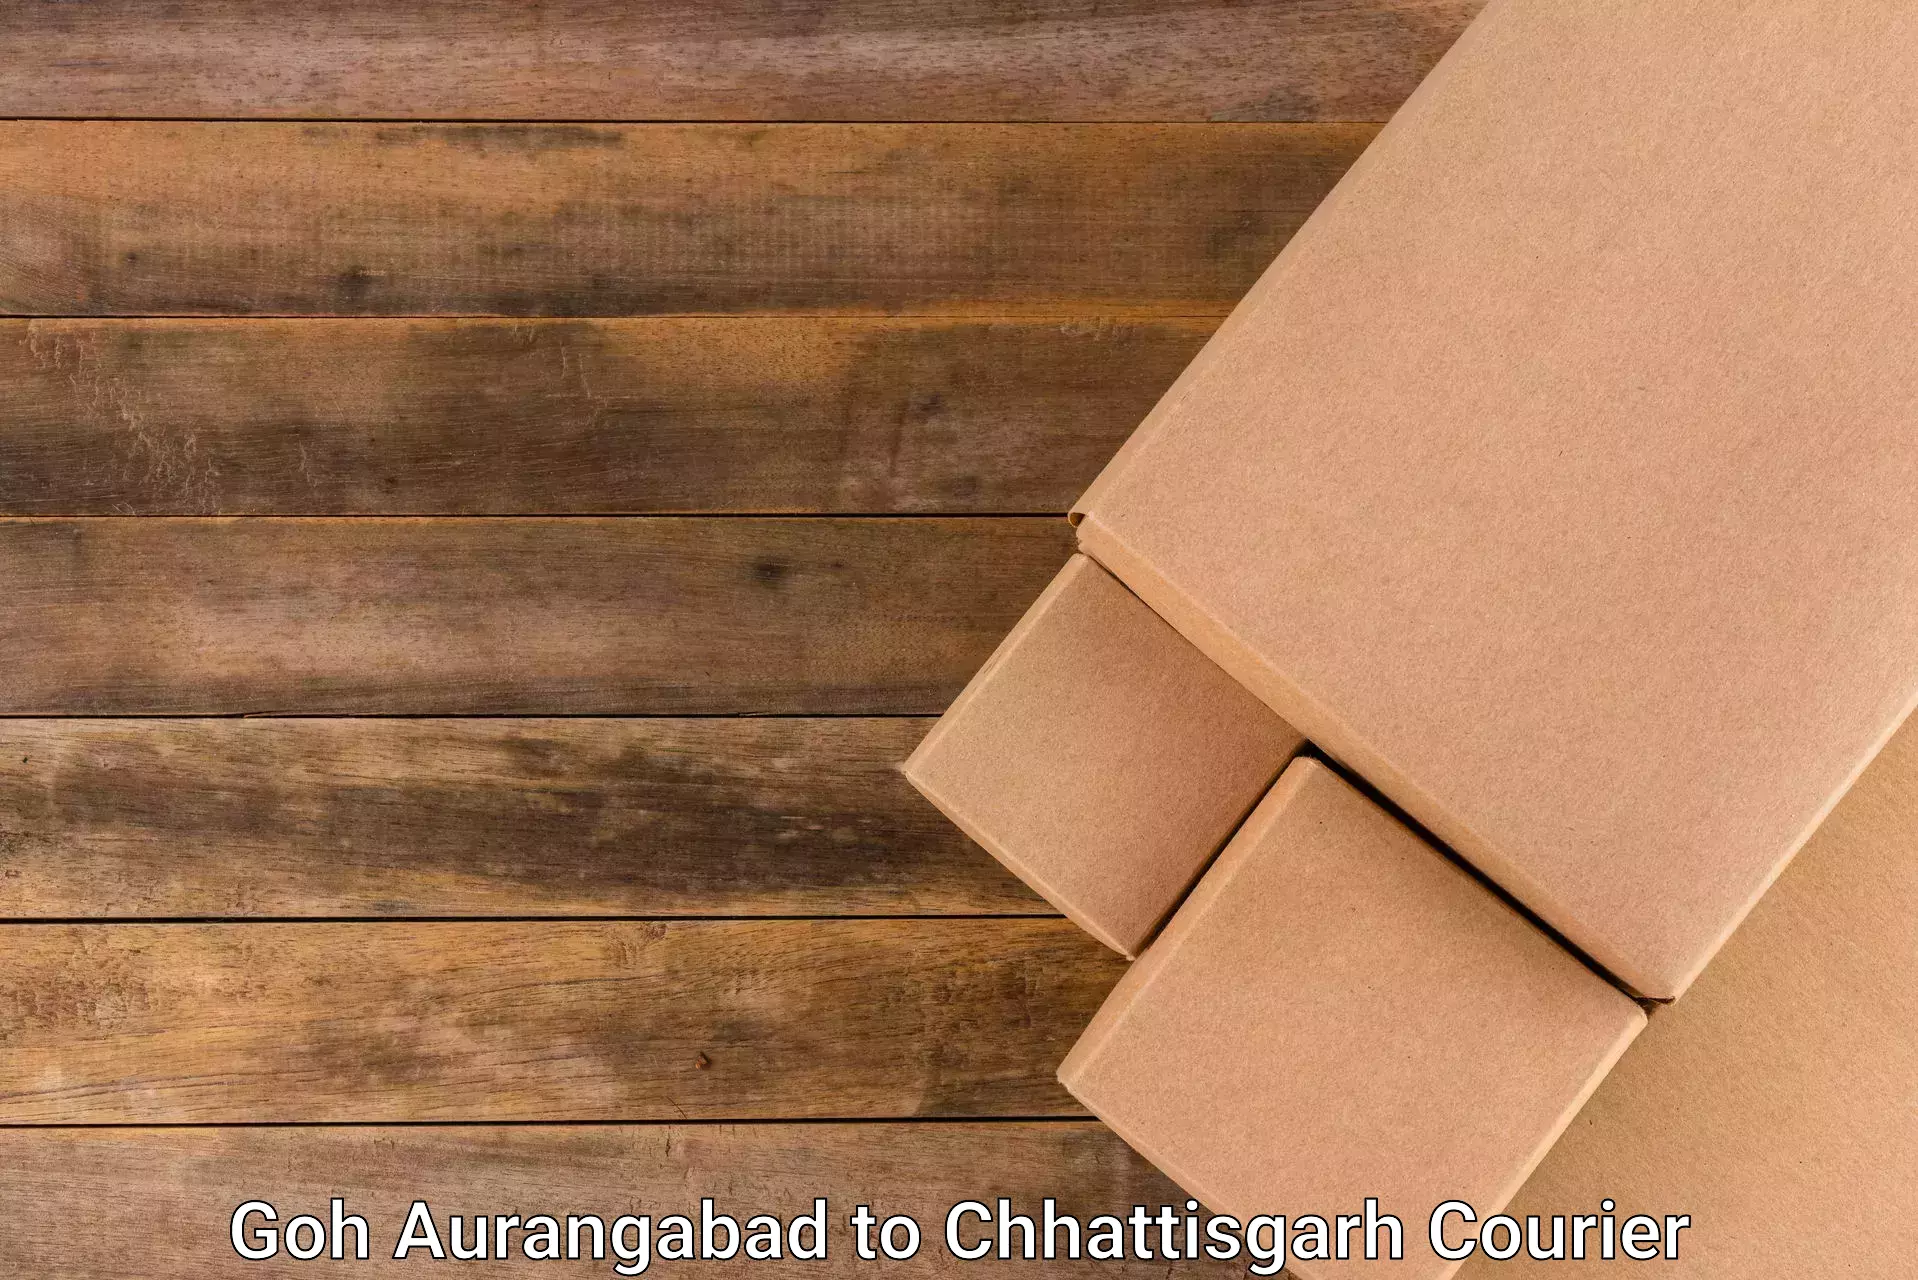 Tailored delivery services Goh Aurangabad to Wadrafnagar